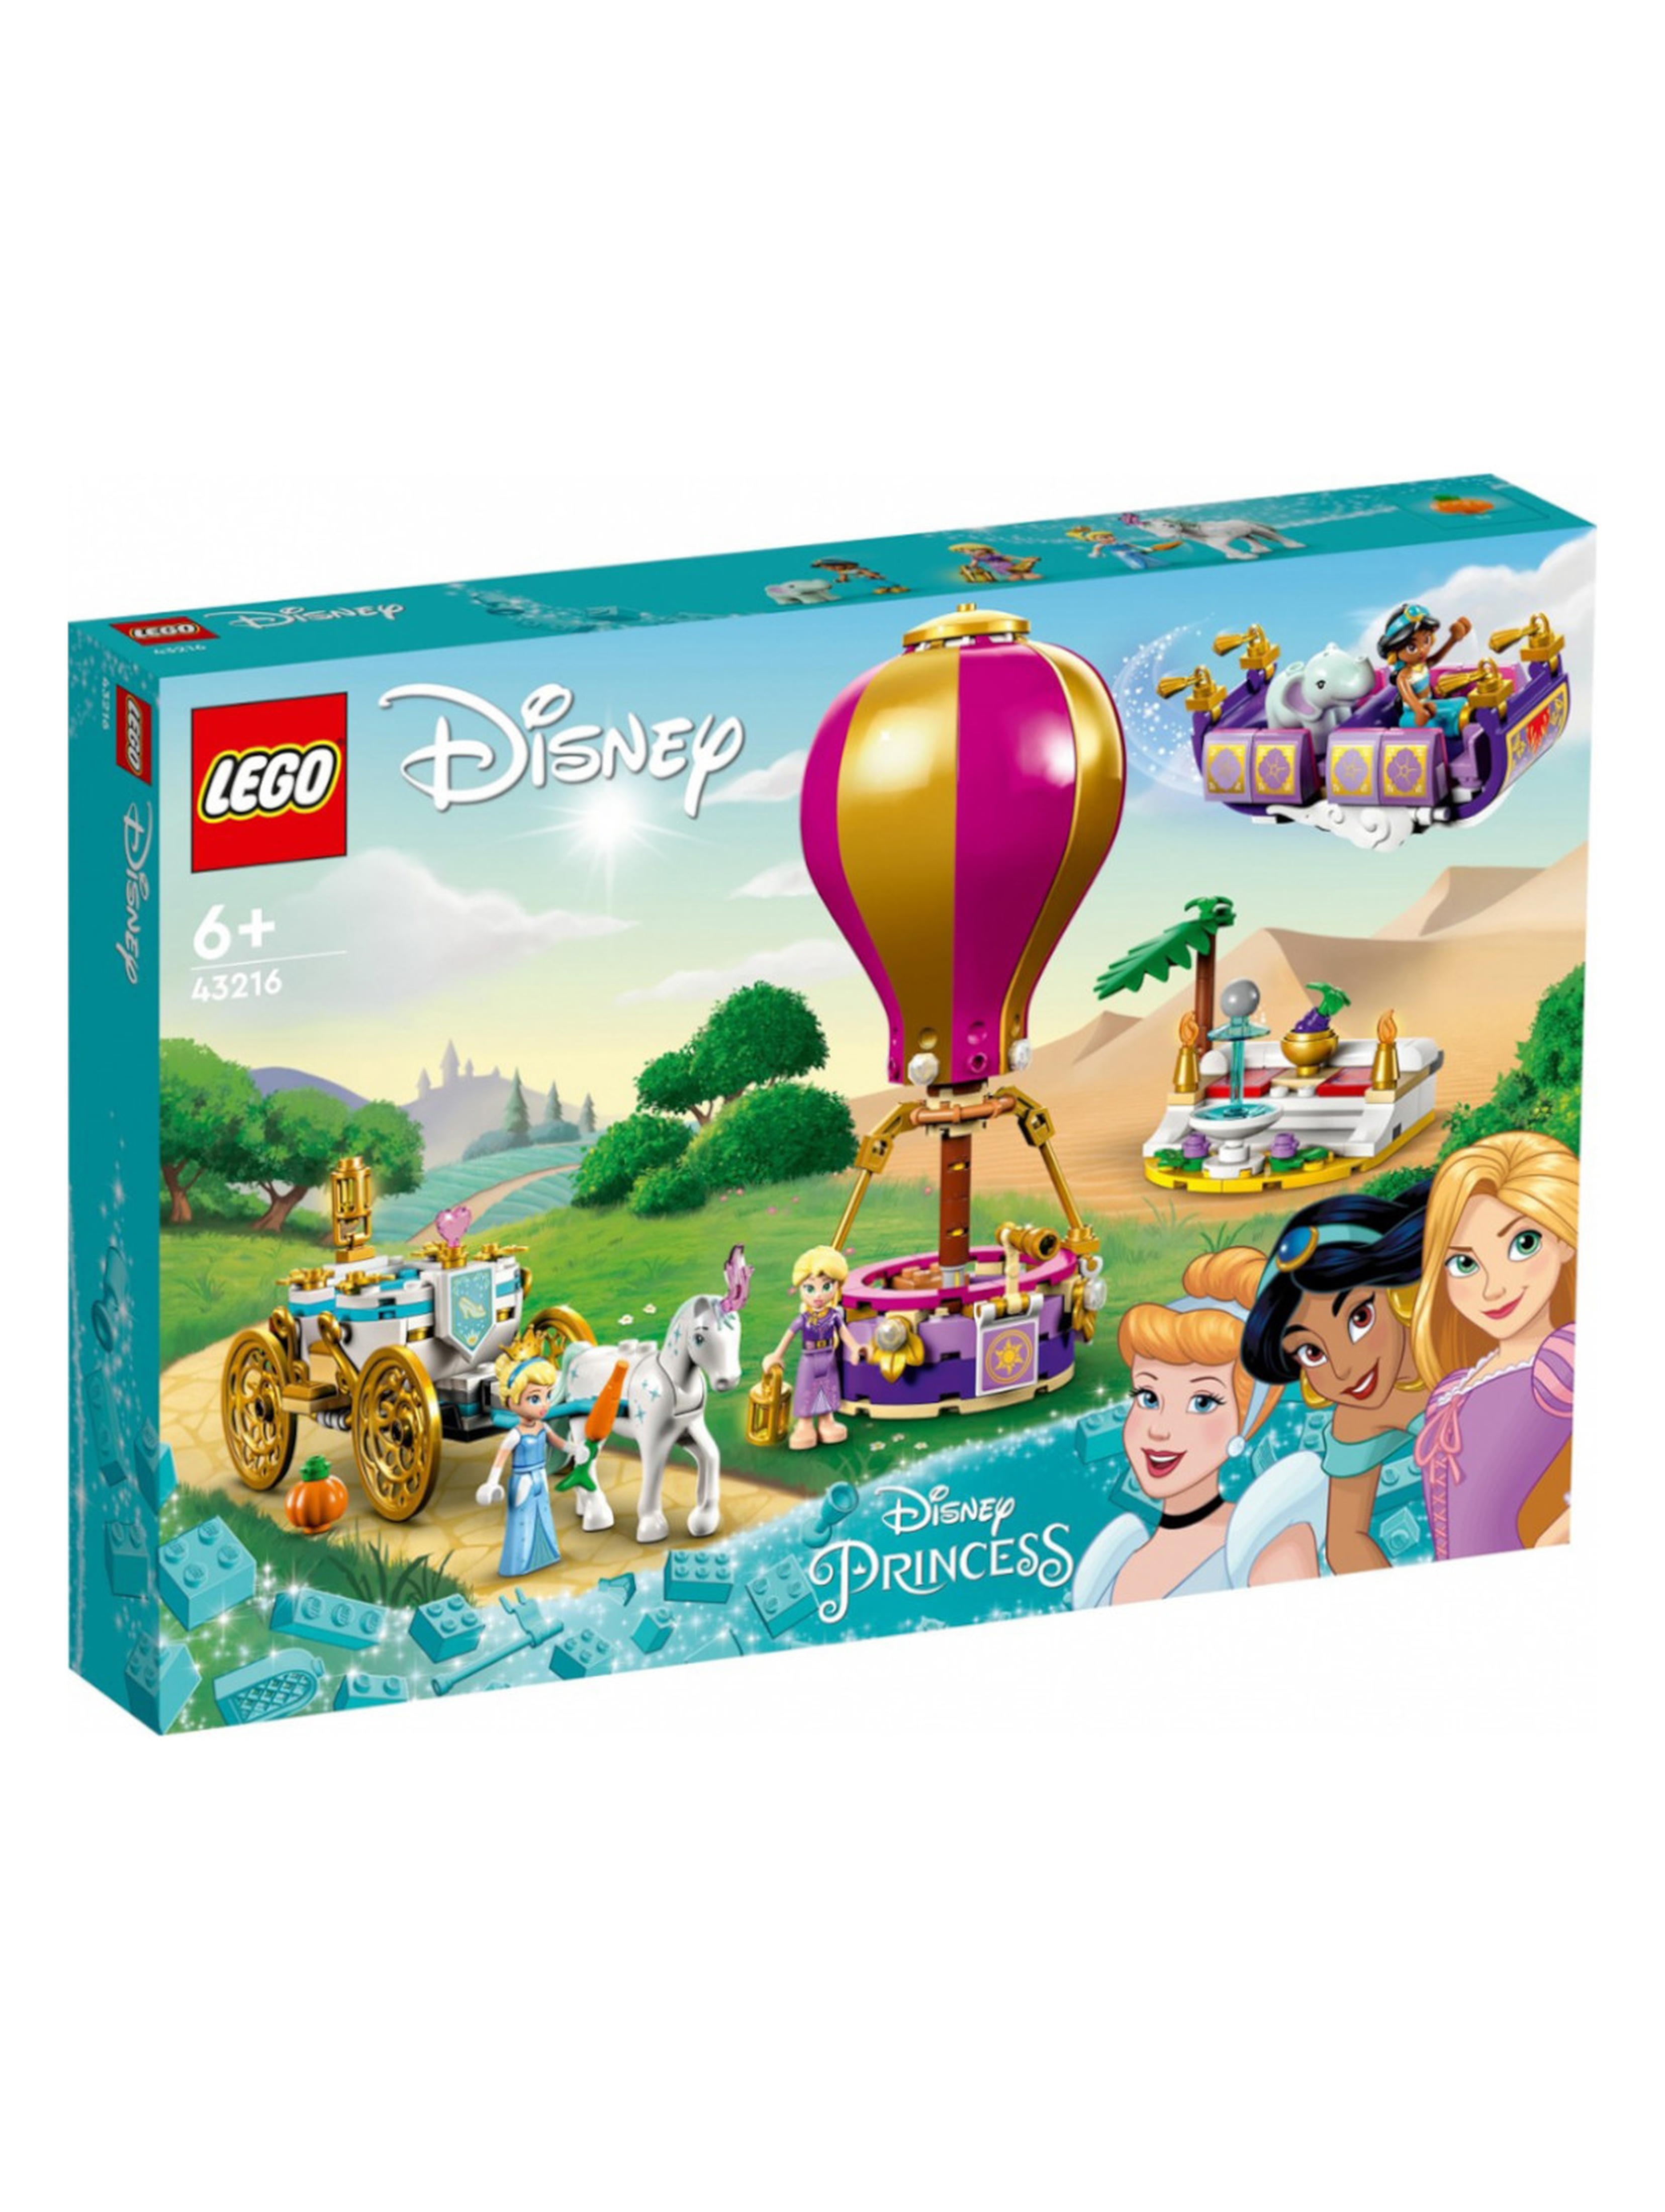 Klocki LEGO Disney Princess 43216 Podróż zaczarowanej księżniczki - 320 elementów, wiek 6 +